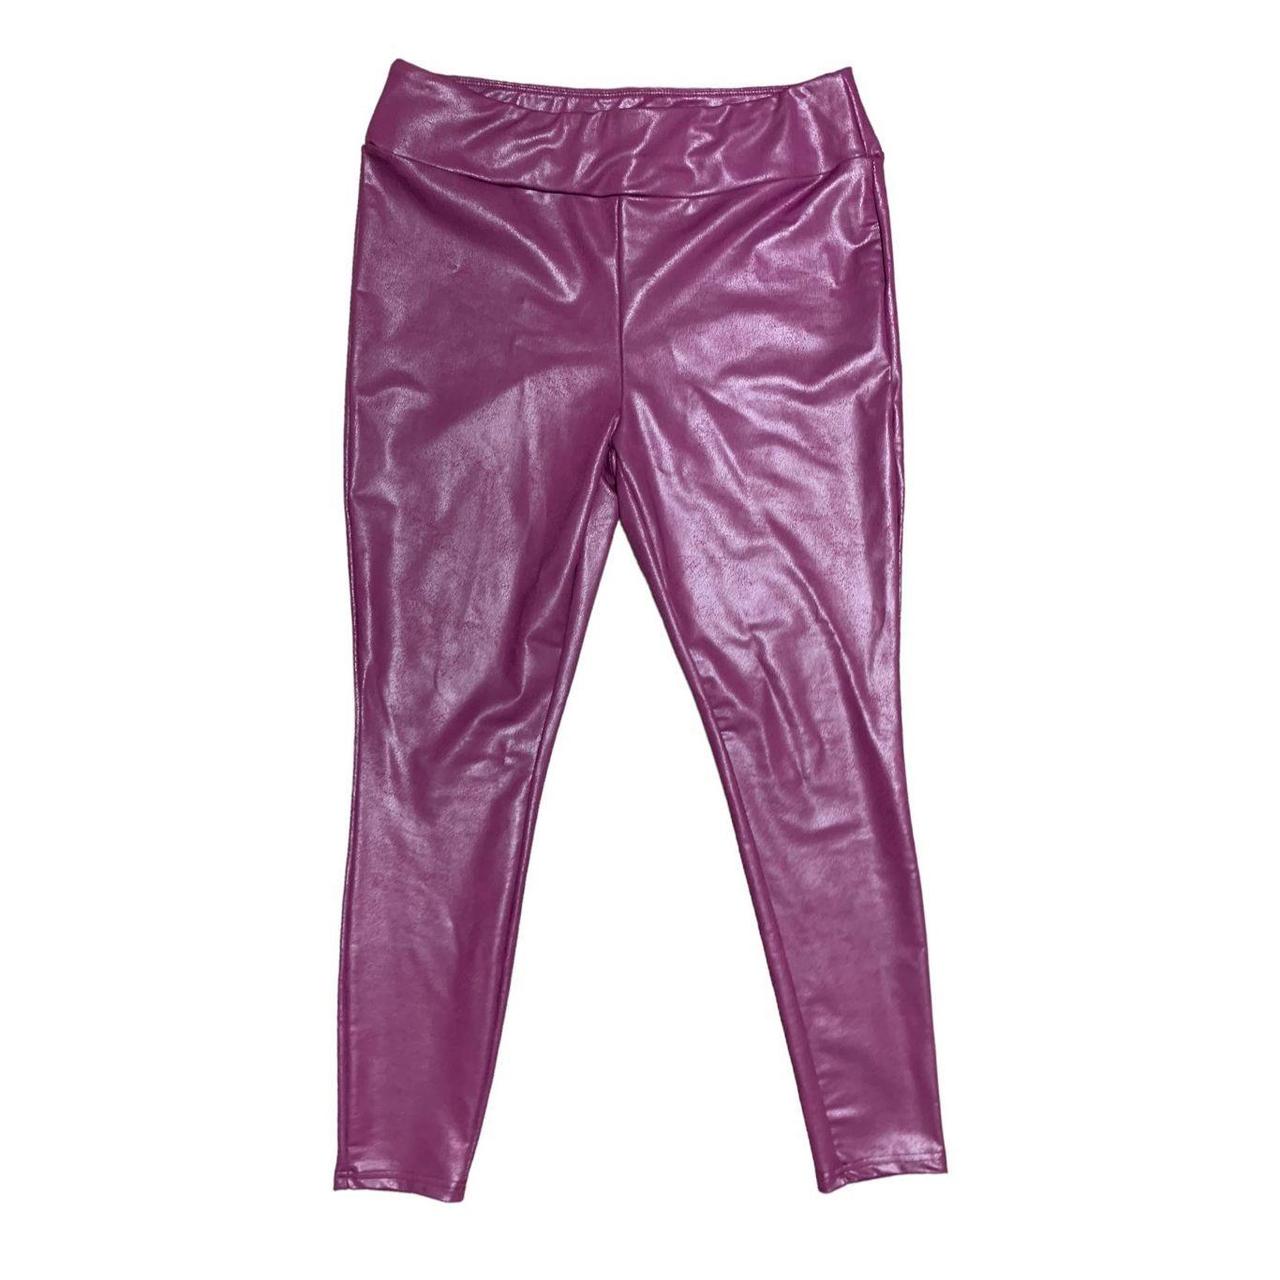 LuLaRoe Luxe. Faux leather leggings. A beautiful - Depop